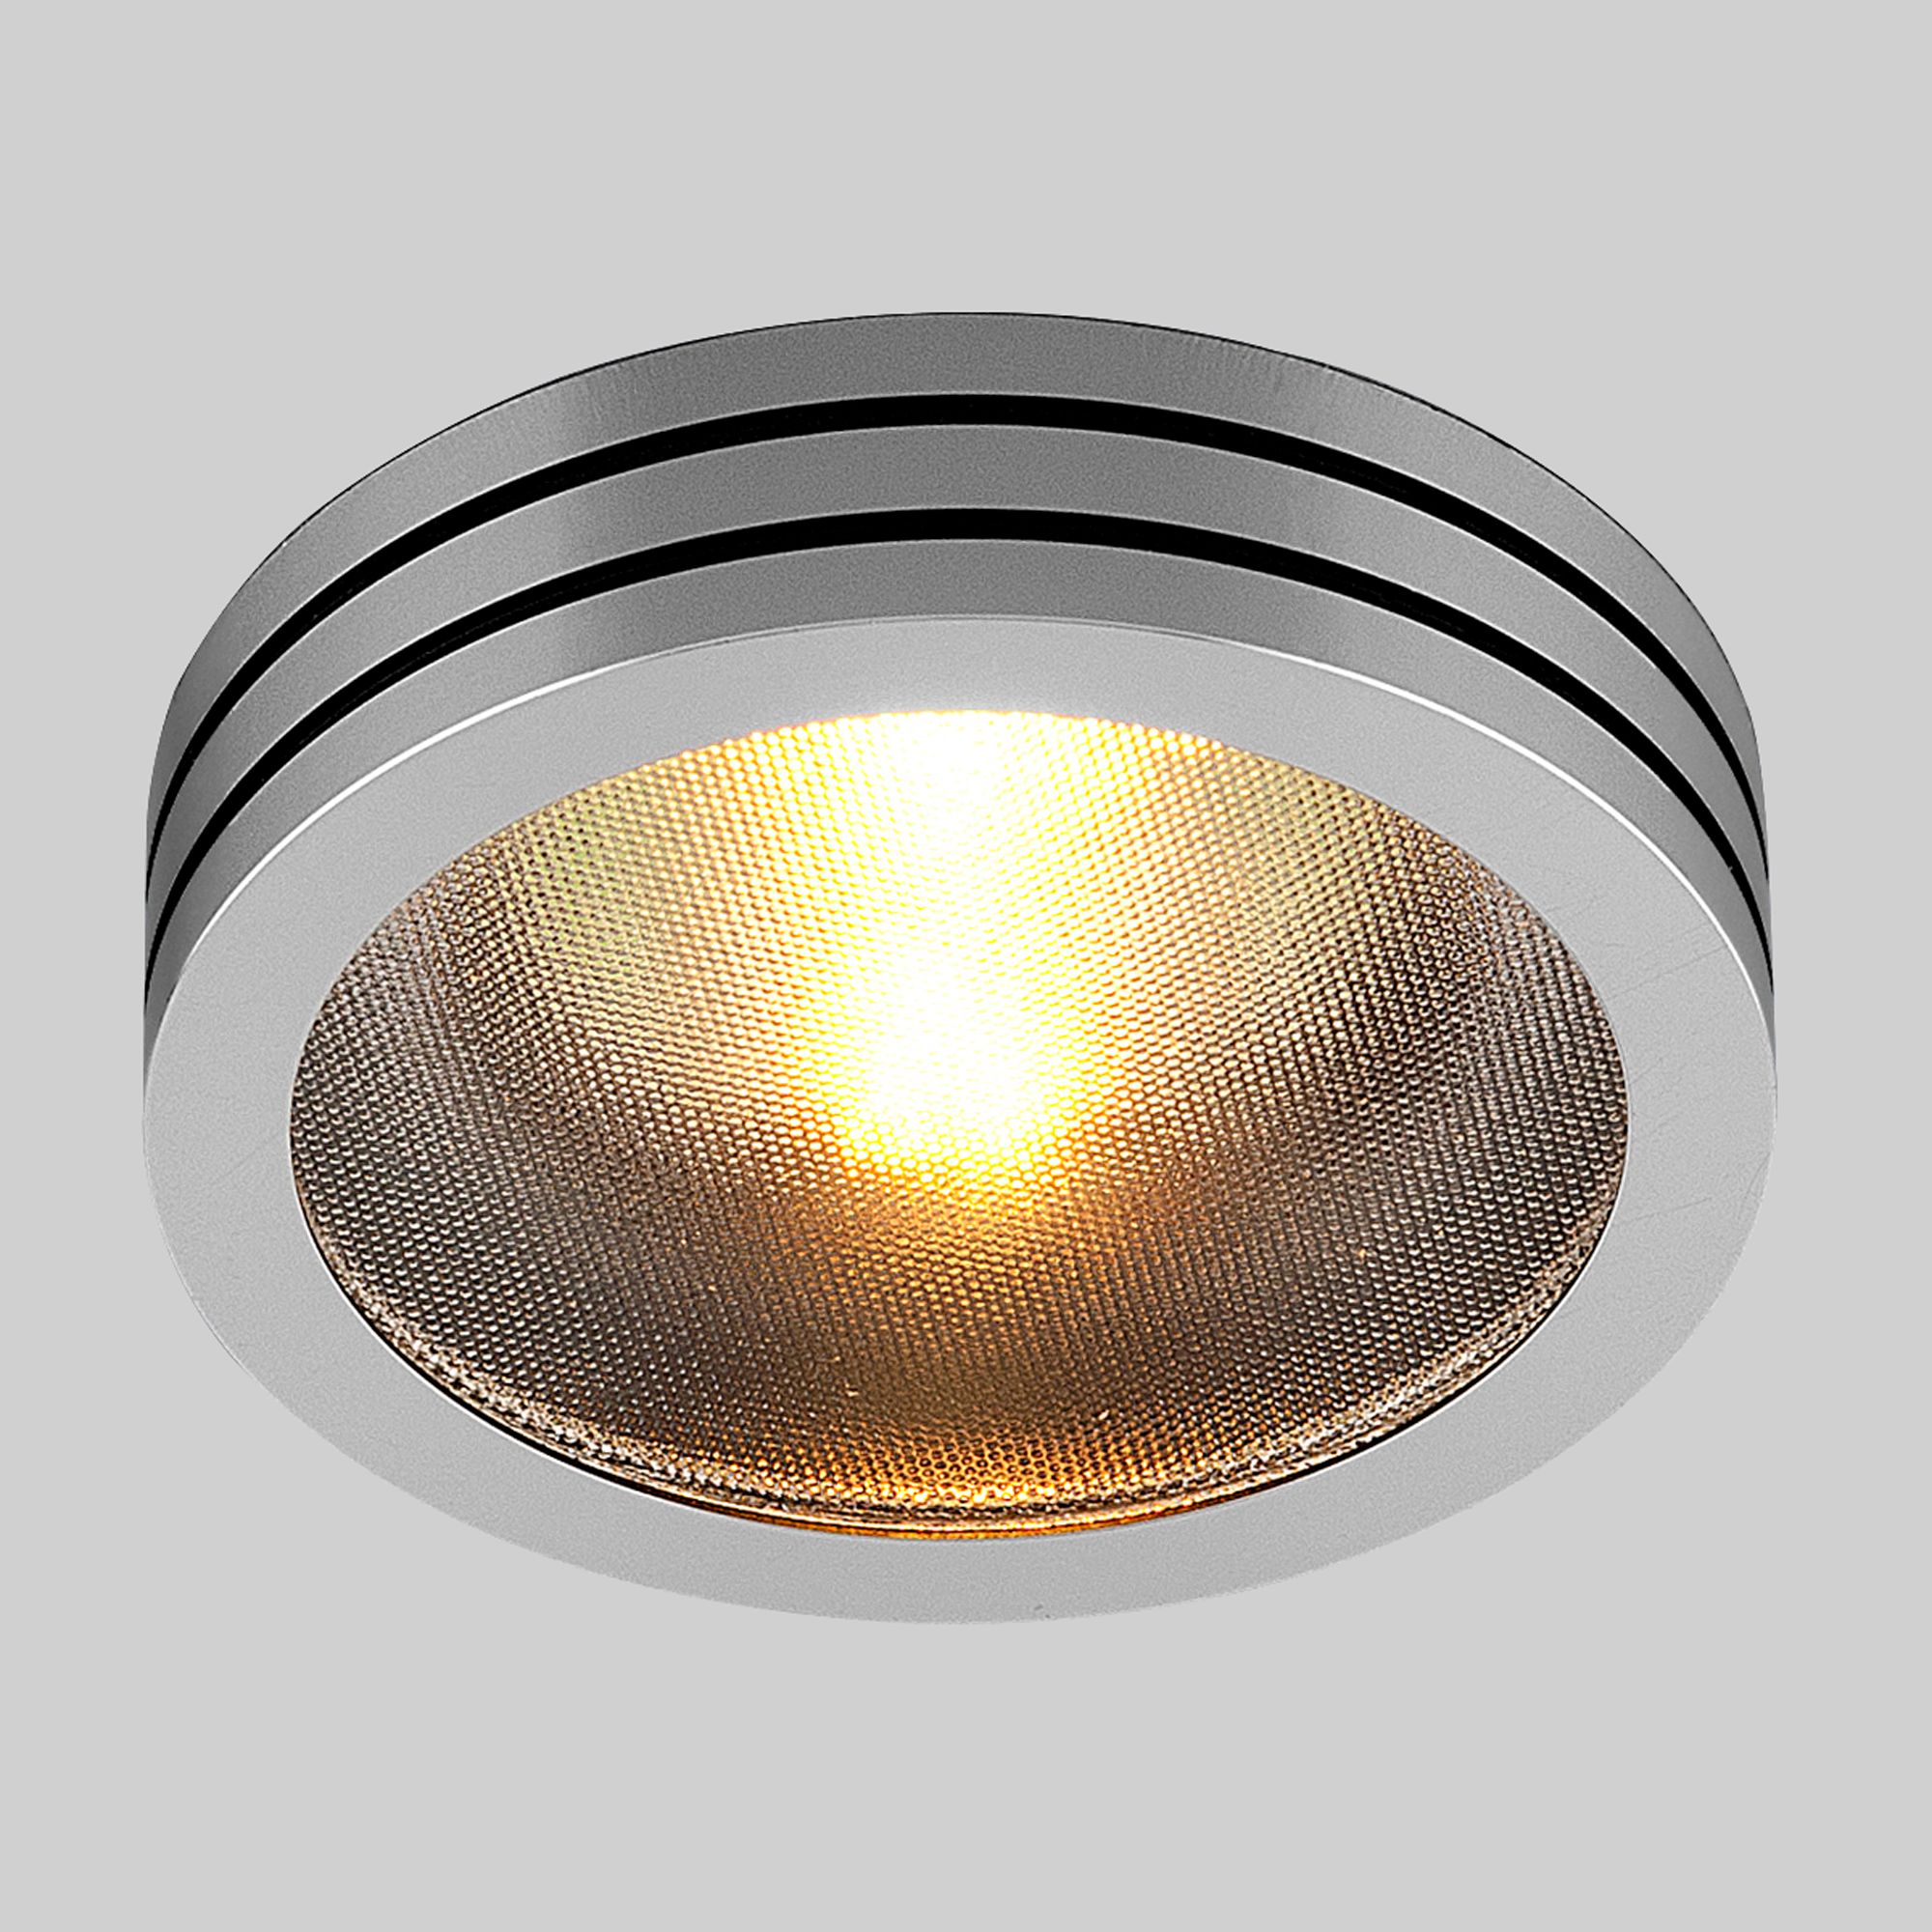 Точечный светильник из алюминия 5153 MR16 CH/BK хром/черный 5153 MR16 CH/BK